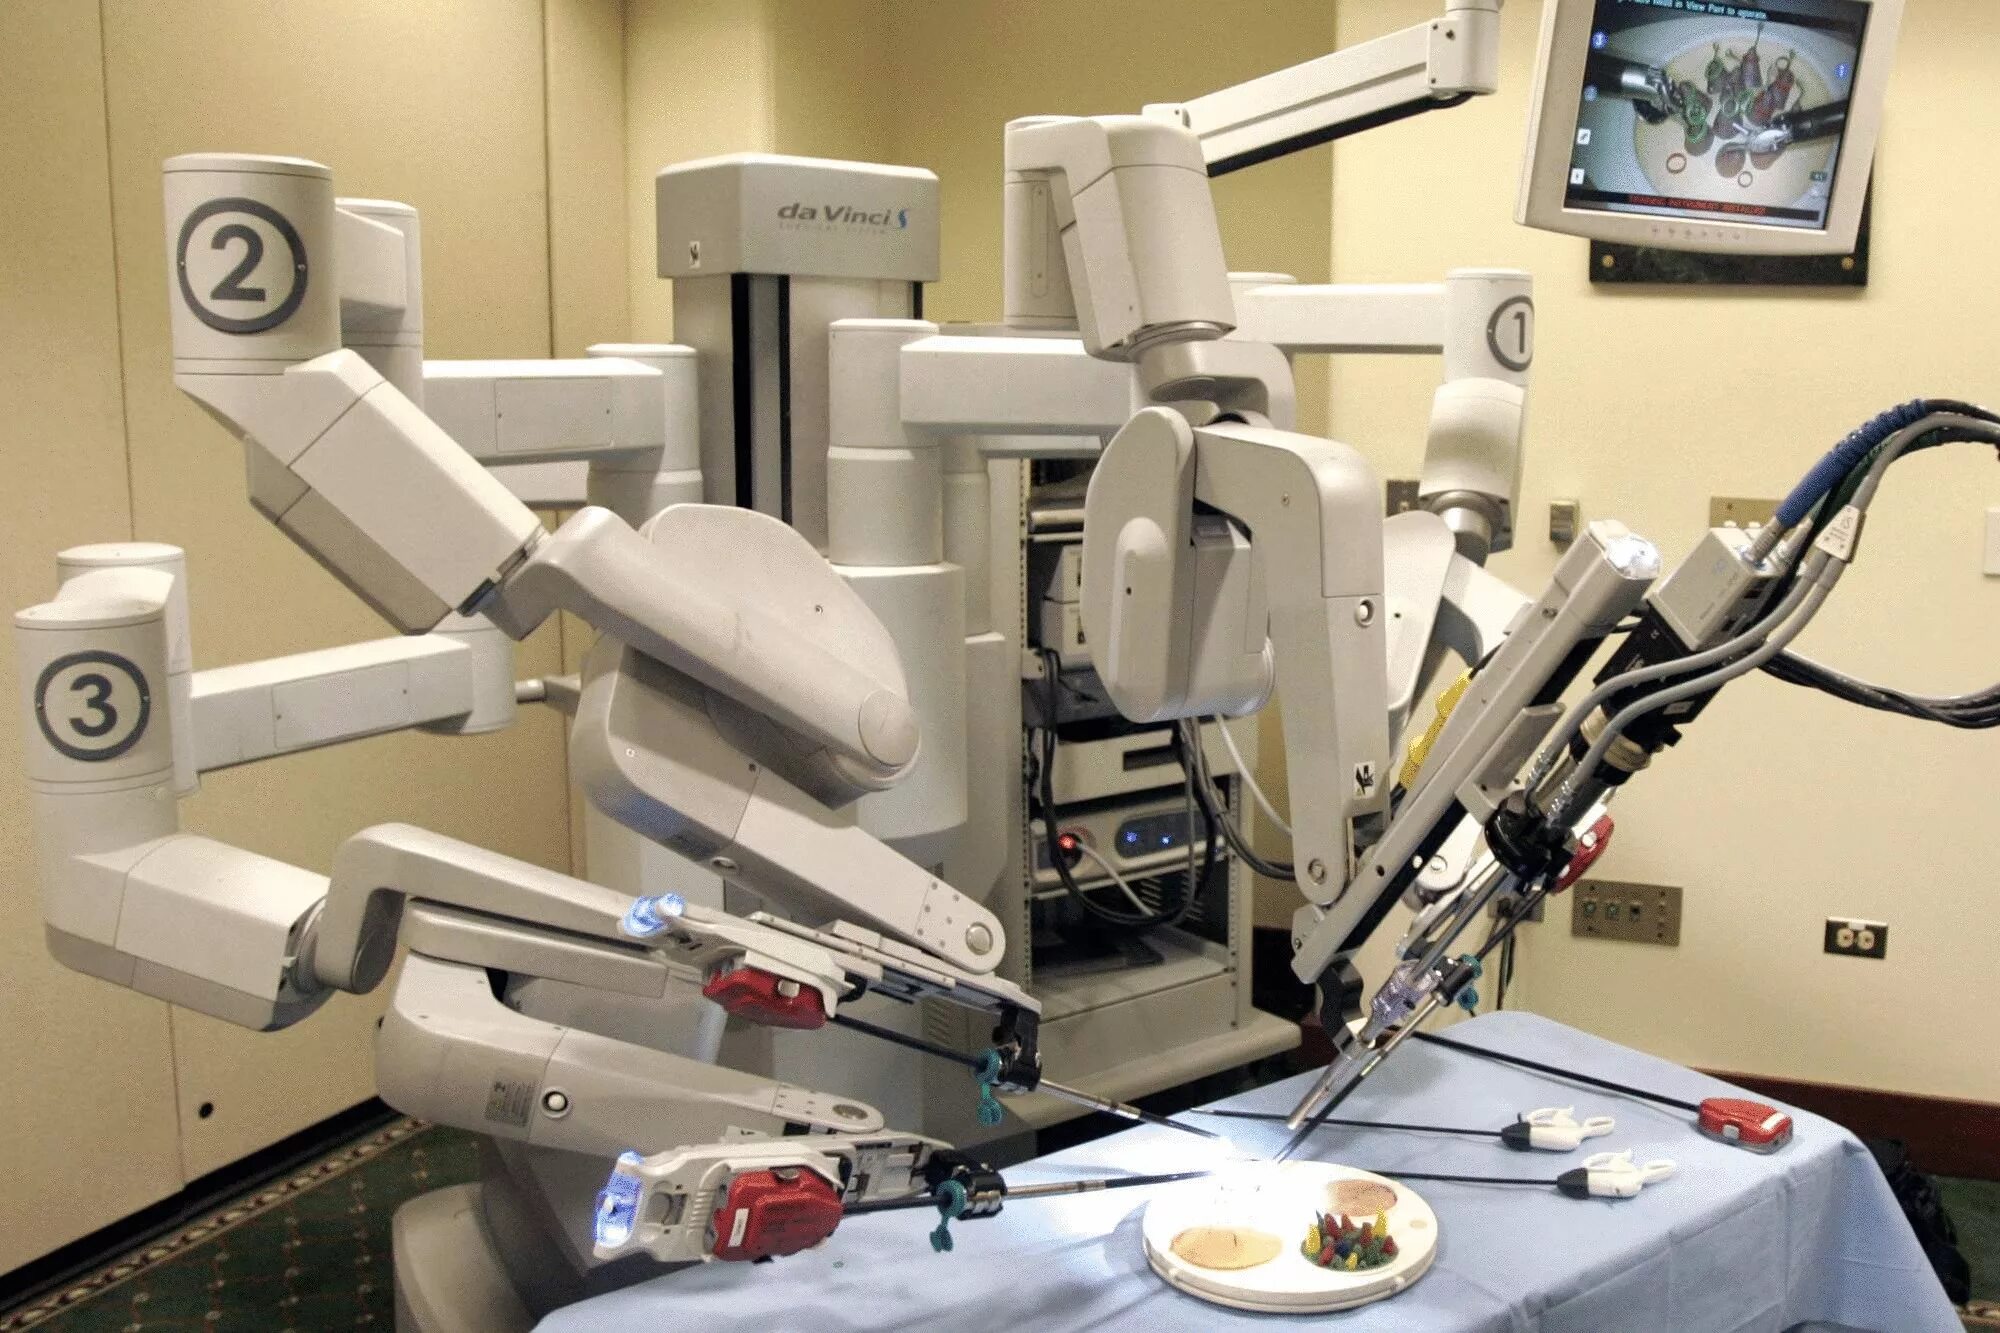 Робот-хирург da Vinci (да Винчи). Da Vinci операционный робот. Робот робот-хирург DAVINCI. Робот-ассистированная хирургическая система «da Vinci».